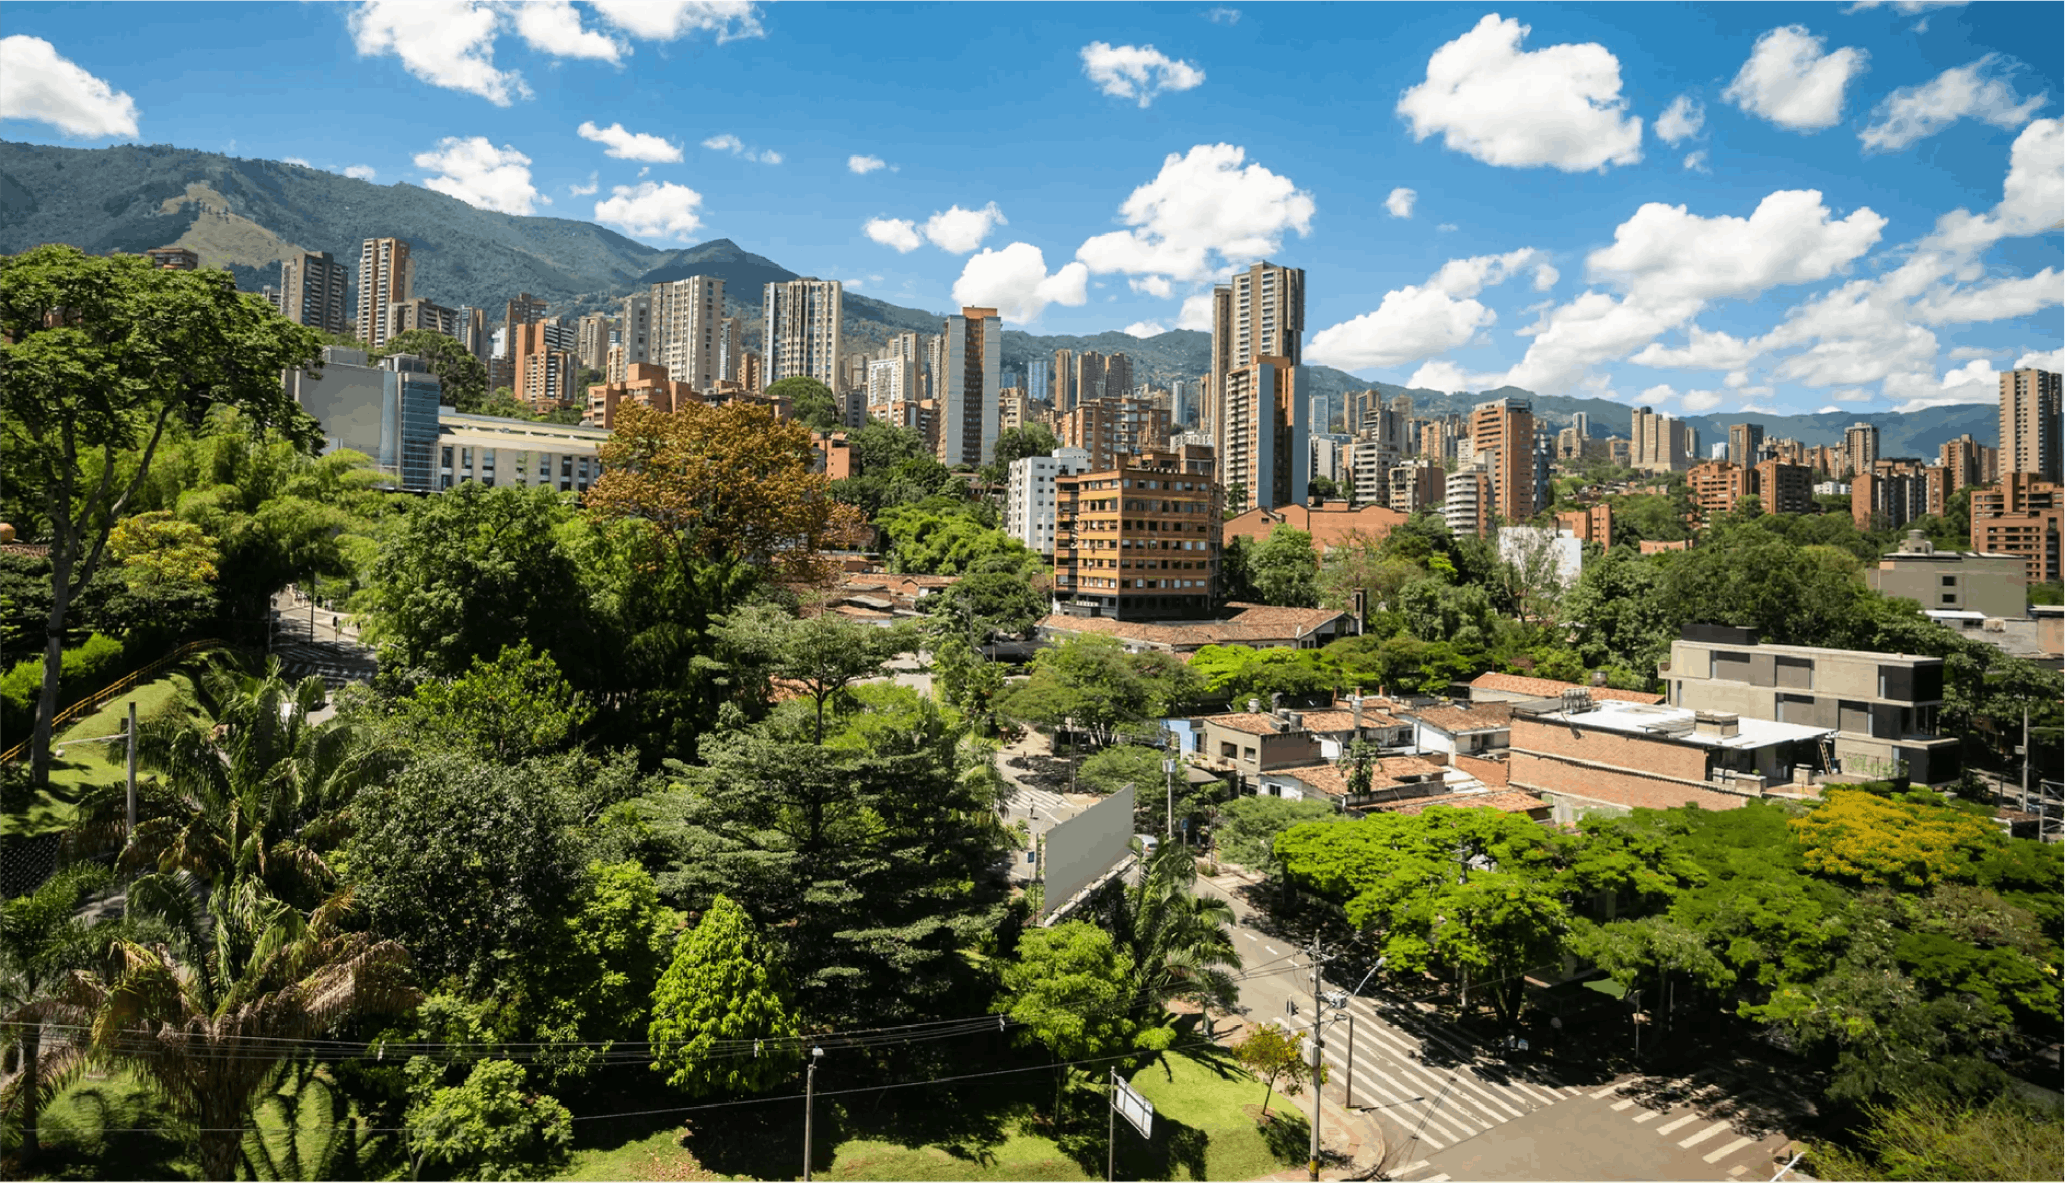 Landscape of Medellin